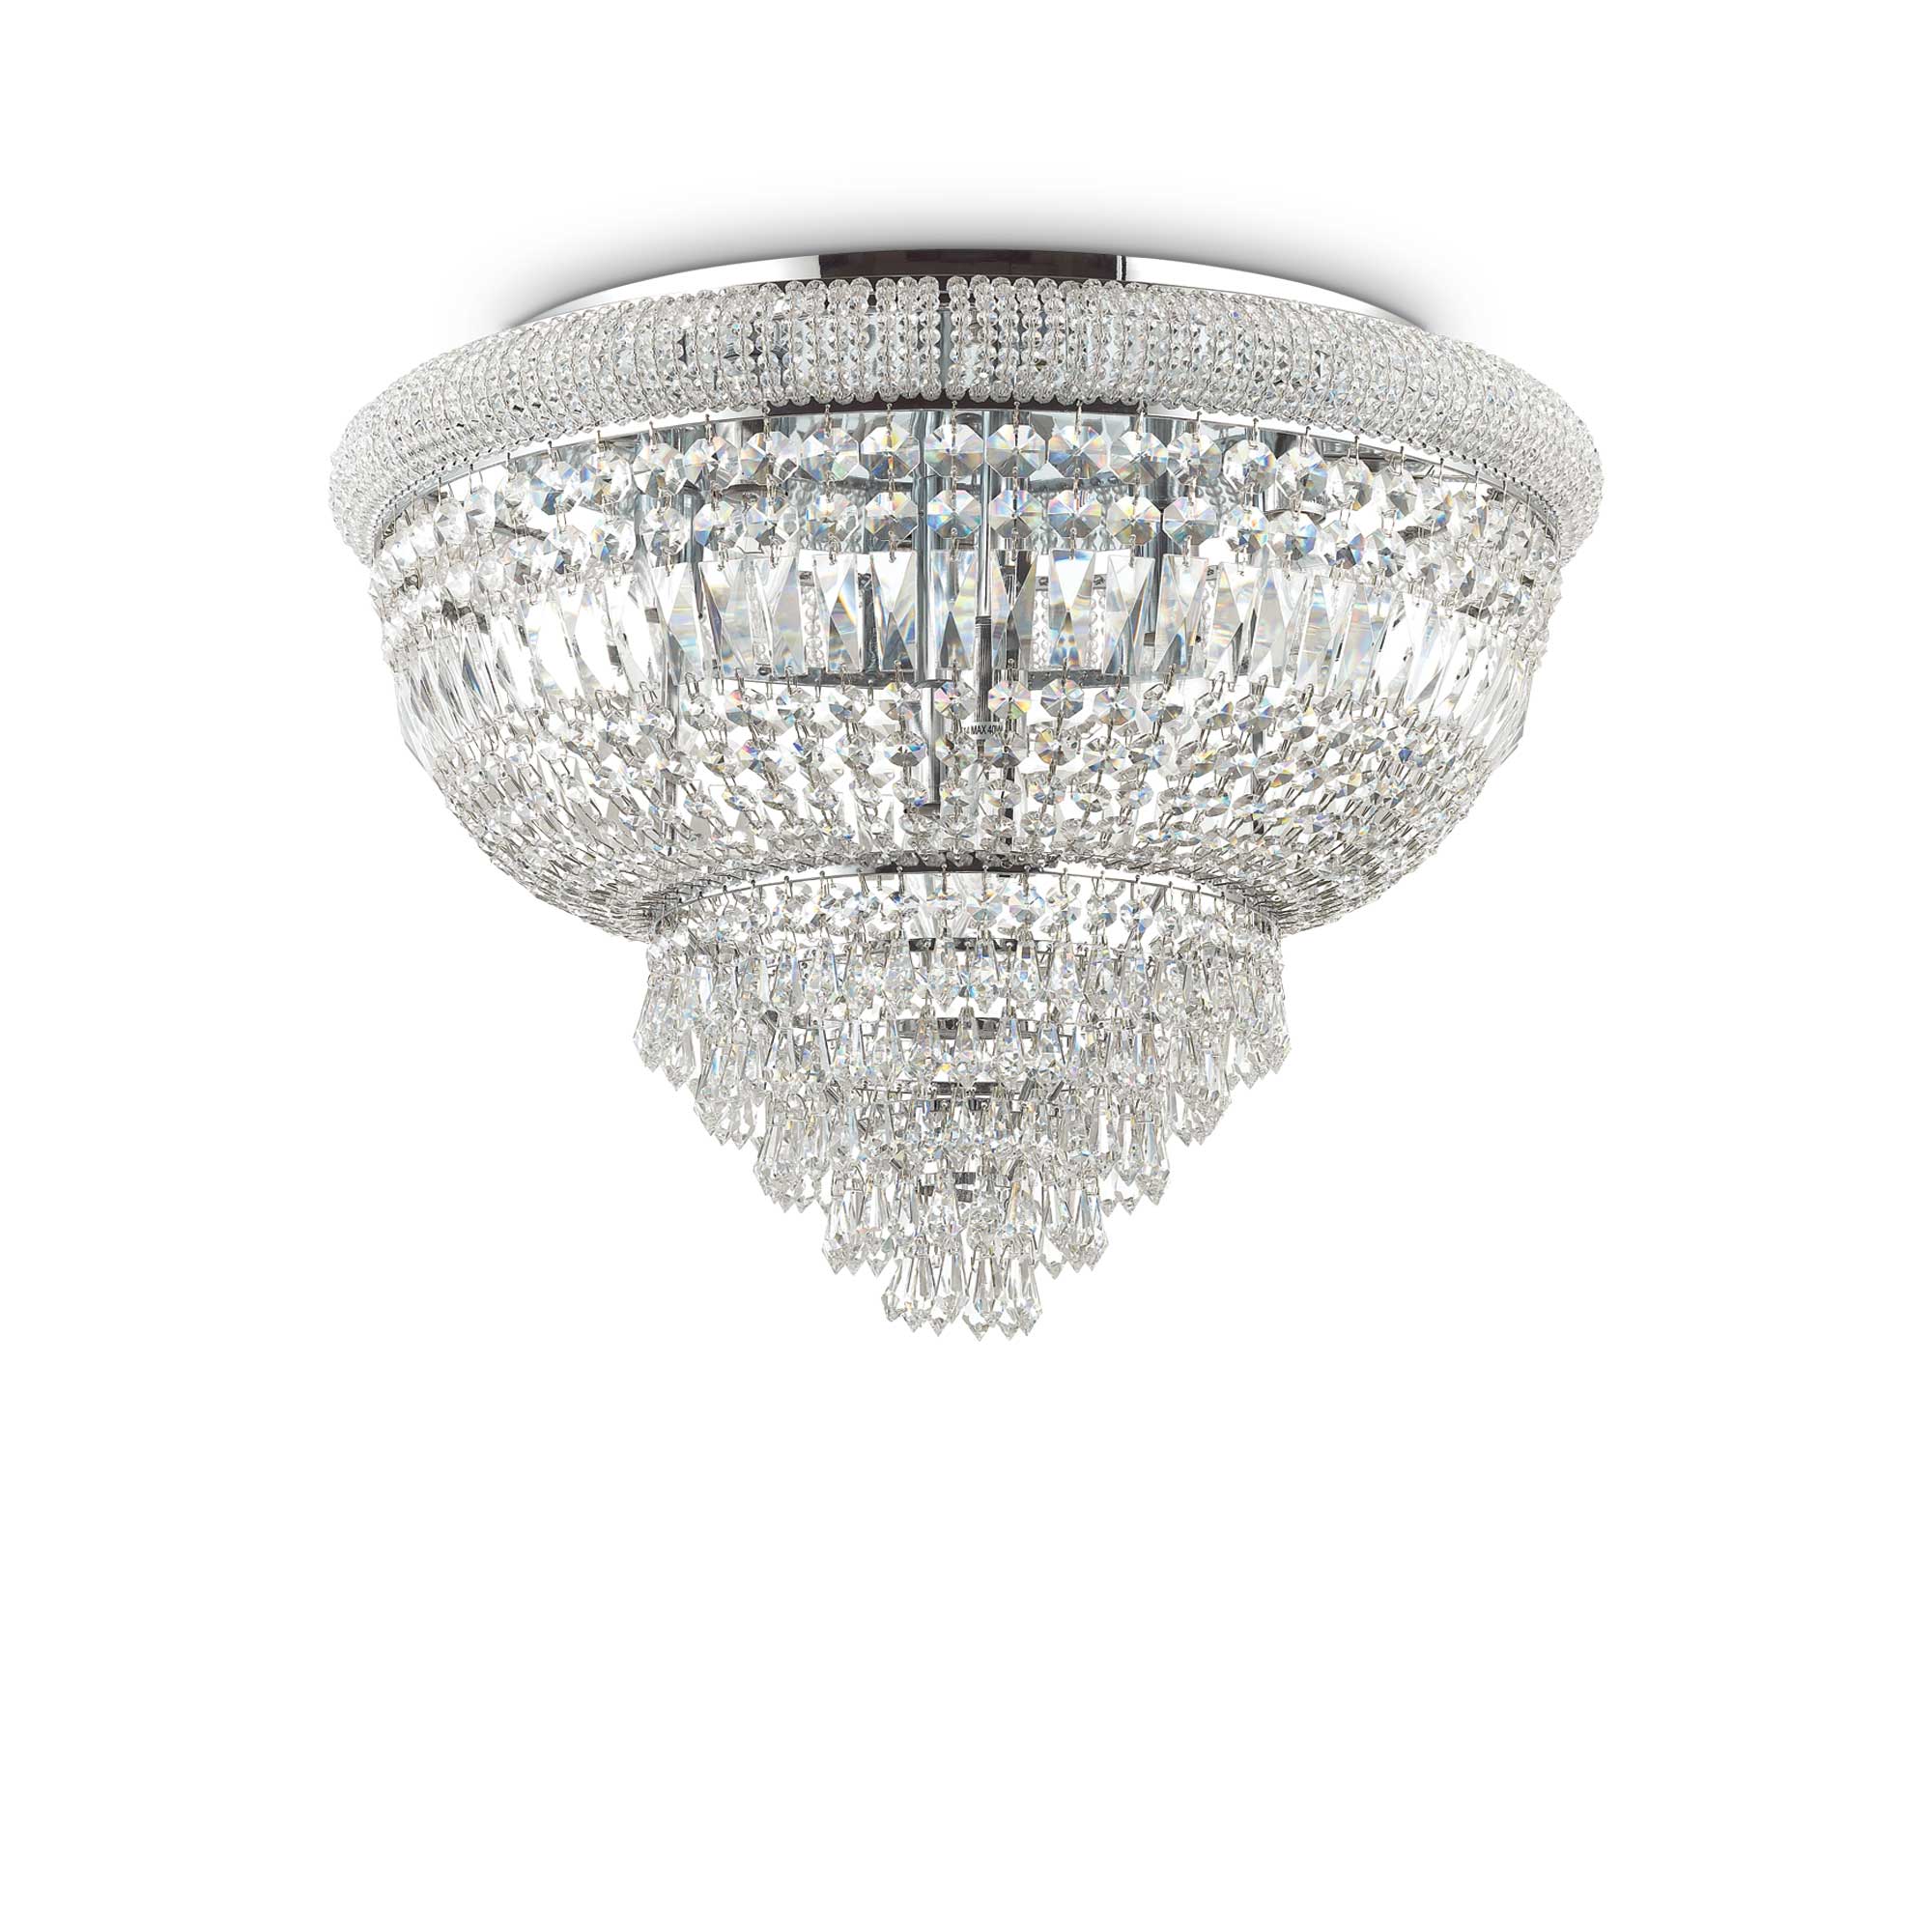 KRISTALL DECKENLEUCHTE Dubai 6Leuchten Silber gefertigt mit funkelnden Bleikristallen SALE% Outlet